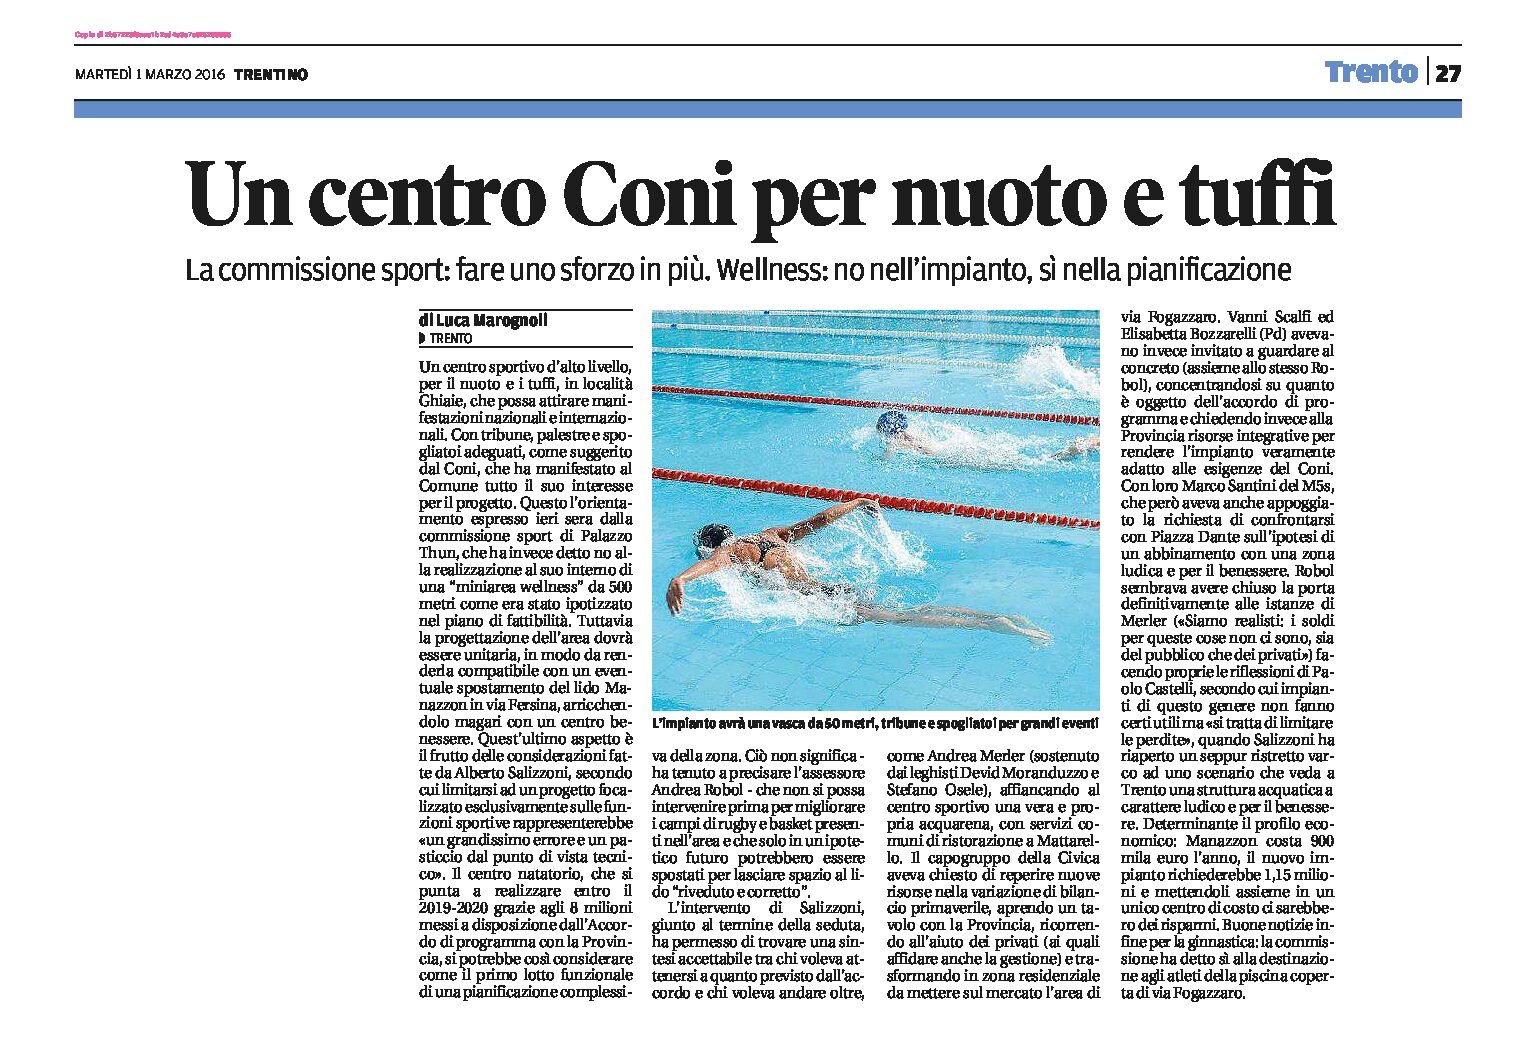 Trento: un centro Coni per nuoto e tuffi, in località Ghiaie